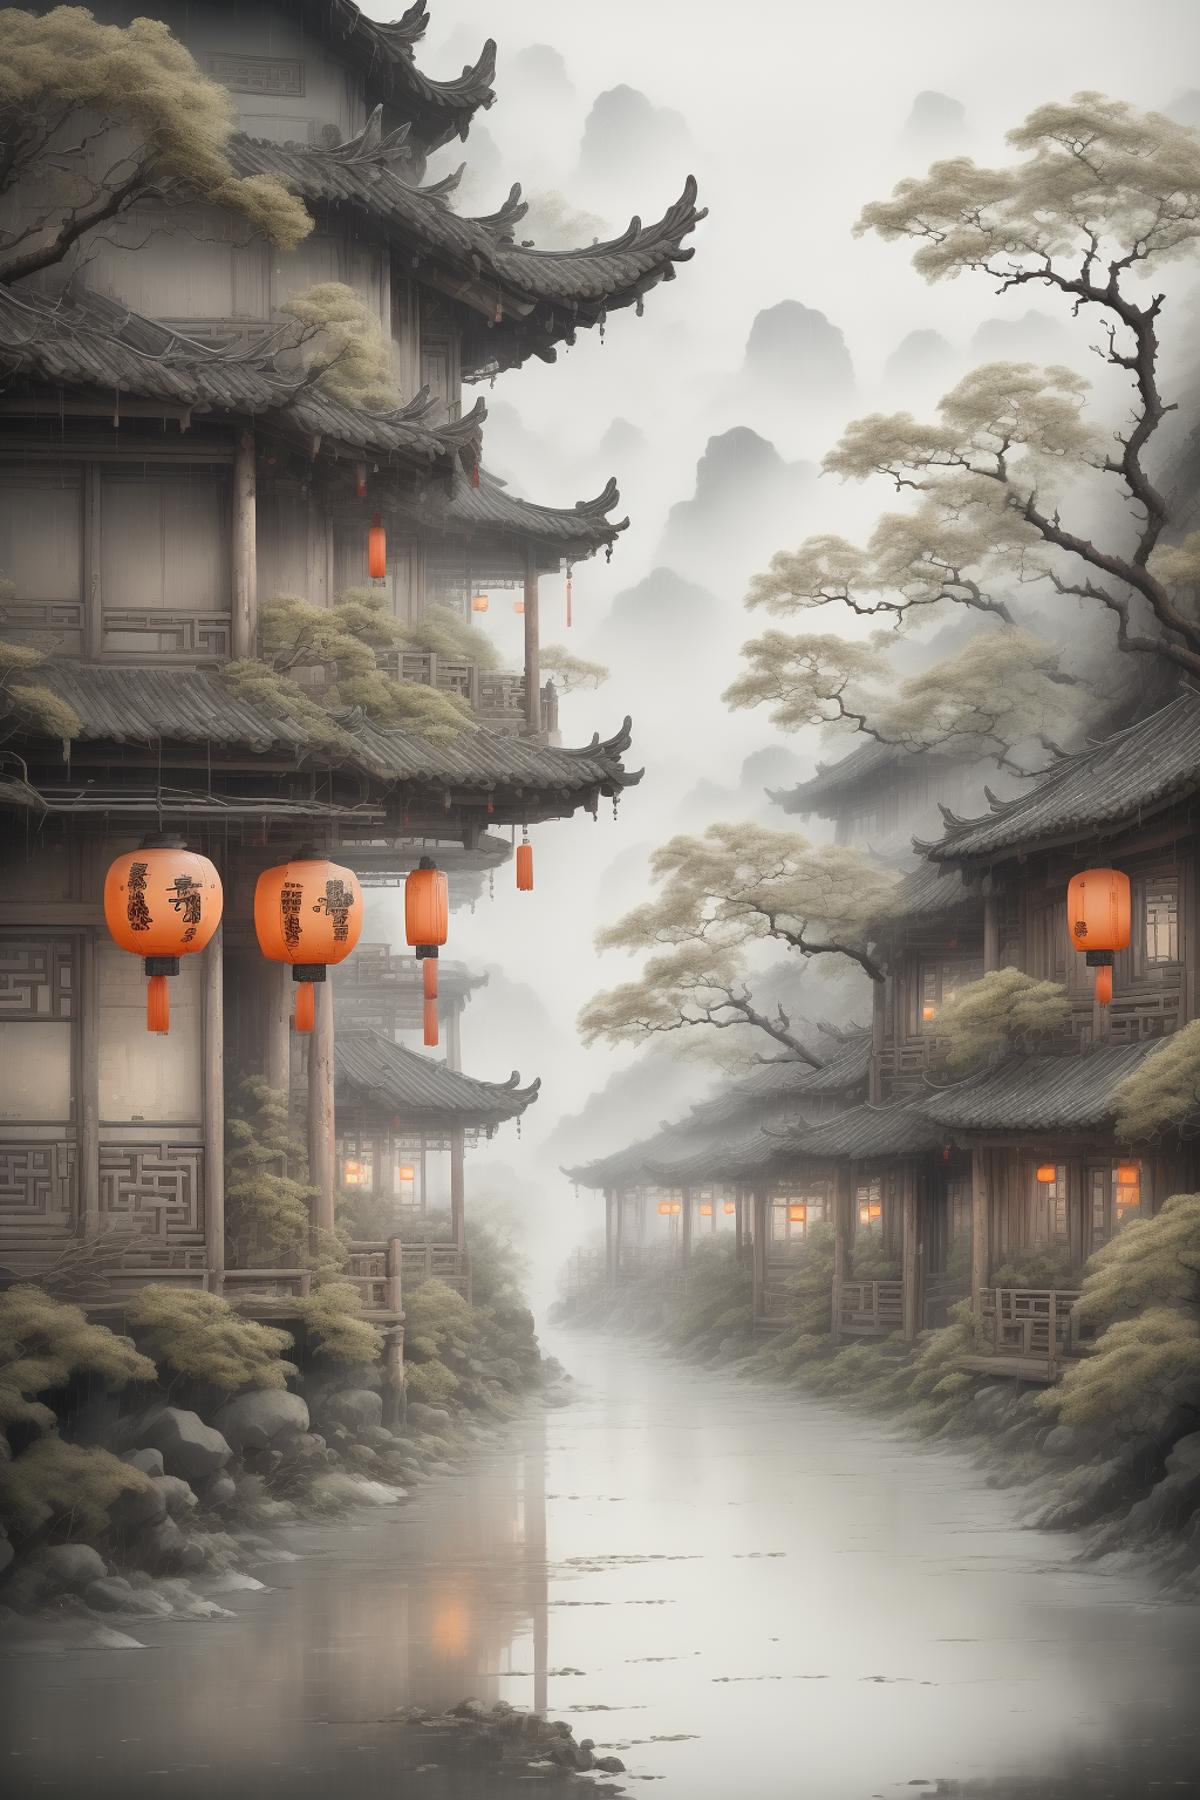 绪儿-水乡场景 Water town scene image by CHINGEL